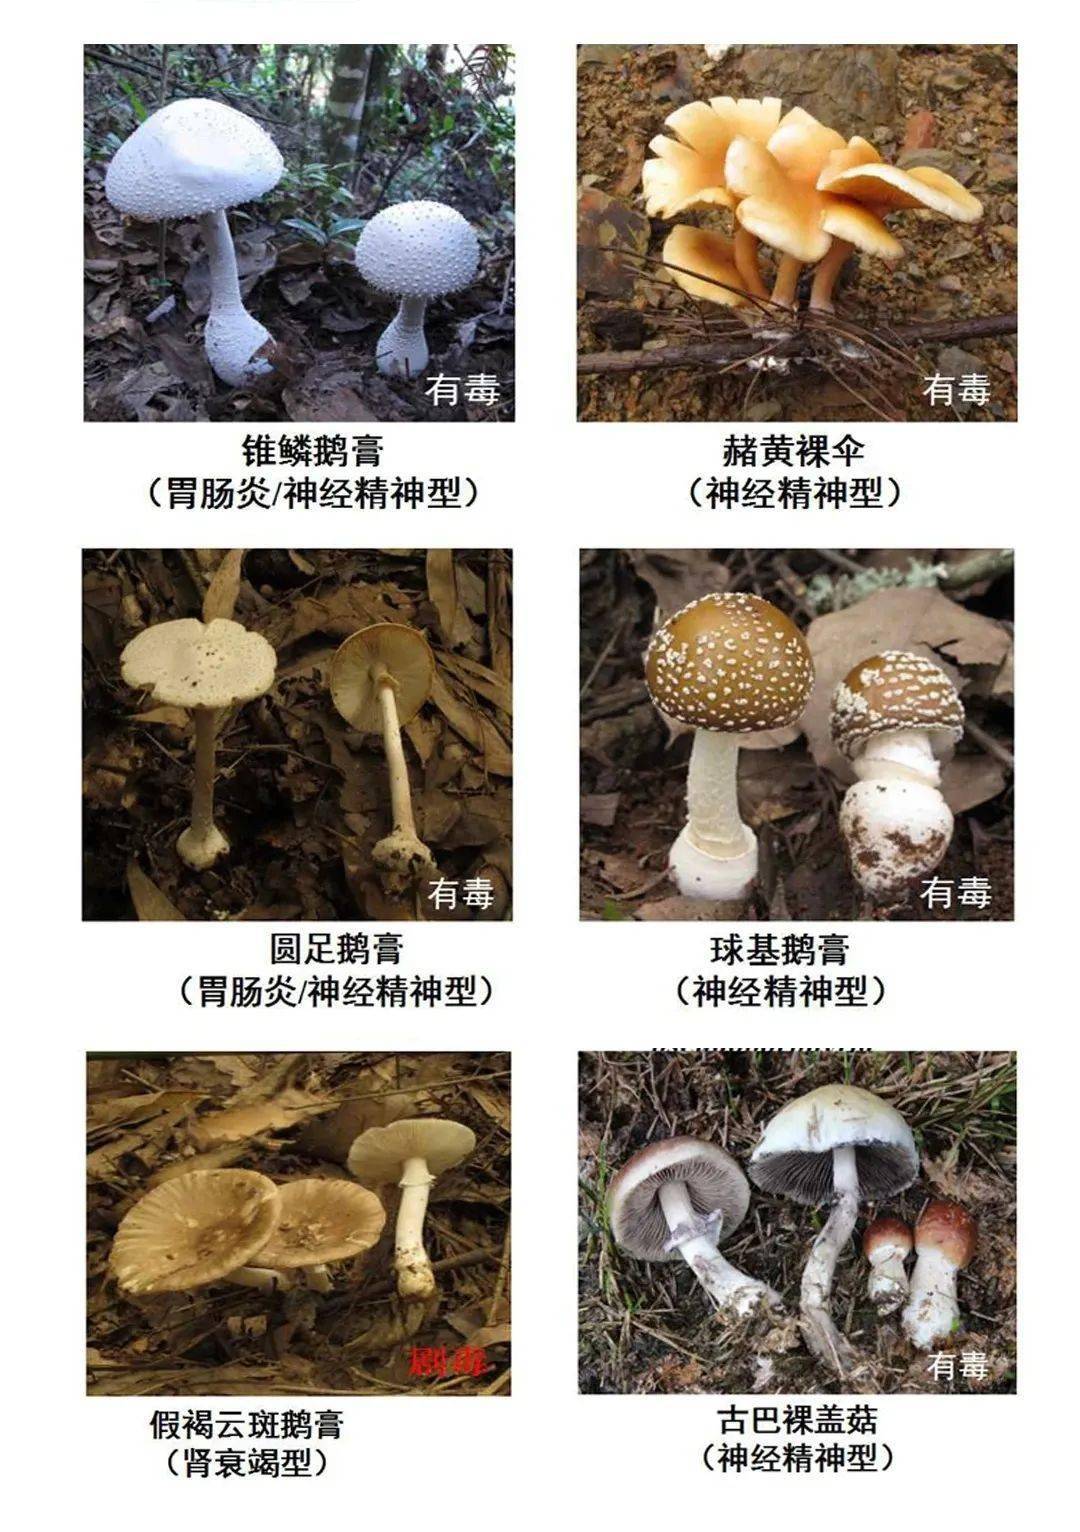 不同毒蘑菇含有不同的毒素,一种毒蘑菇也可能含有多种毒素,对人体造成